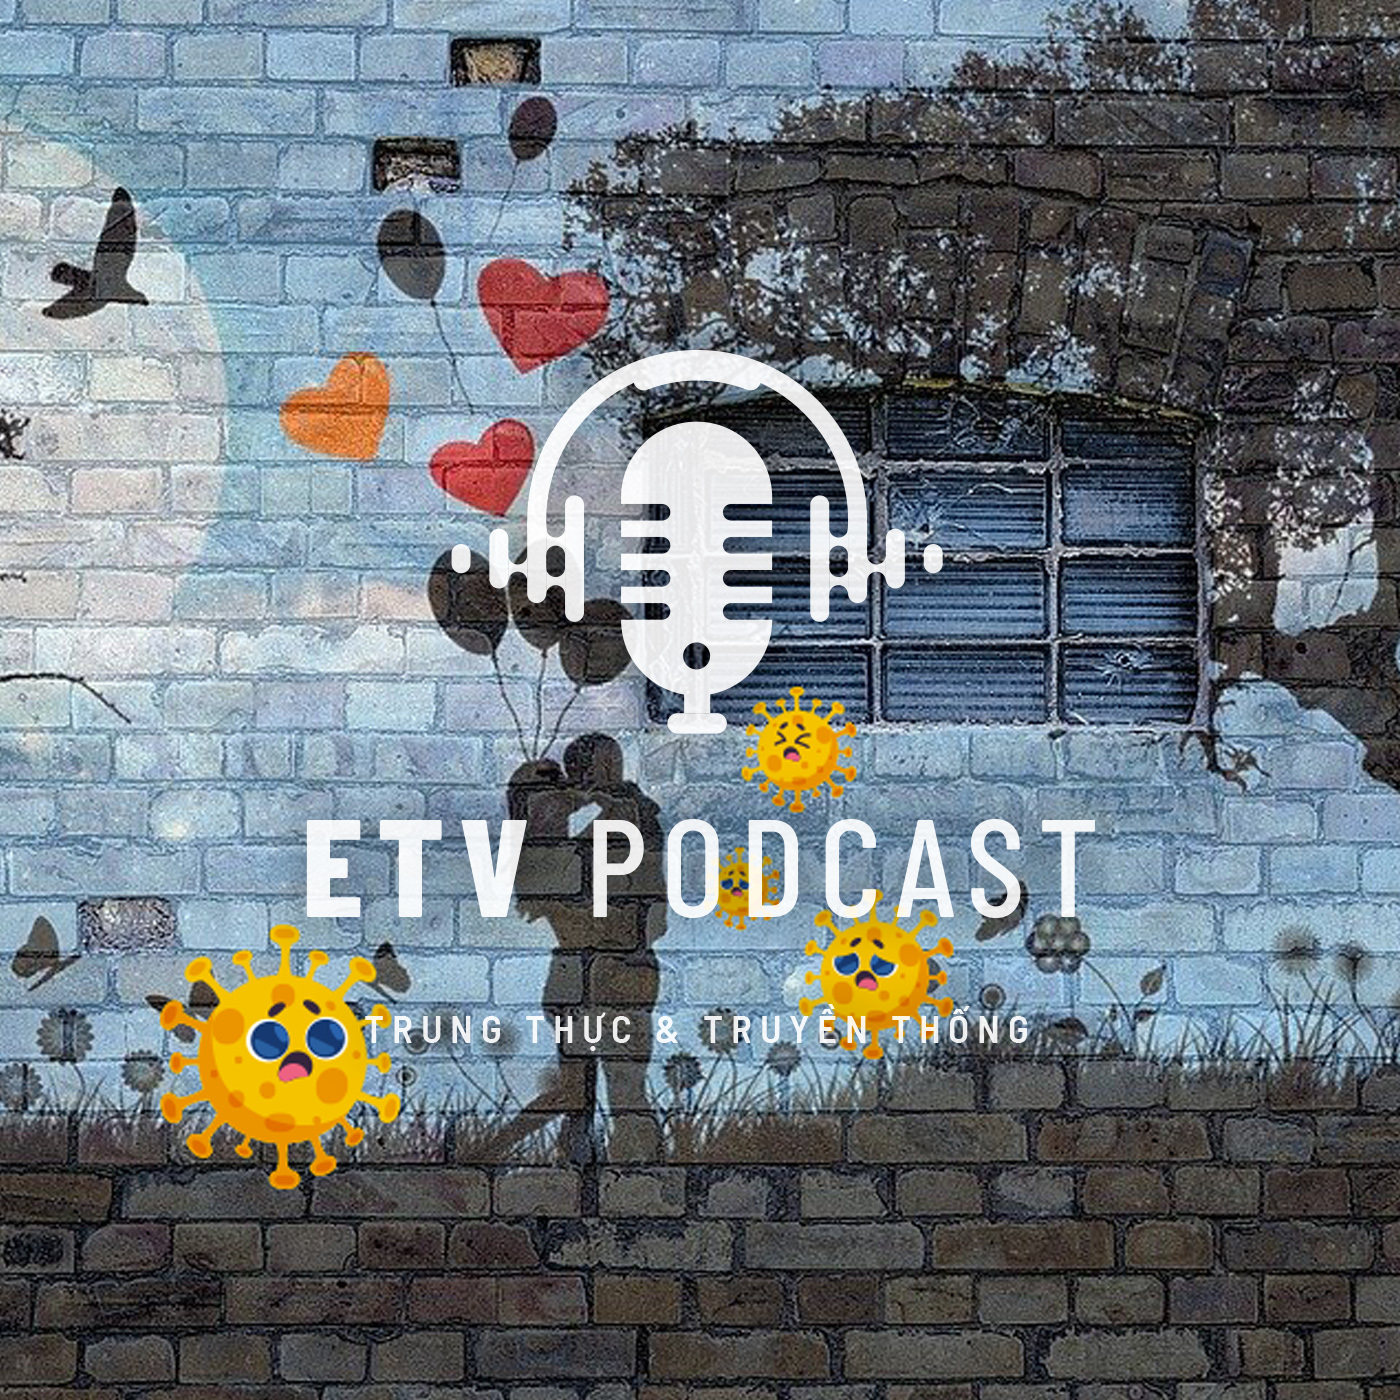 Artwork for podcast ETV Podcast